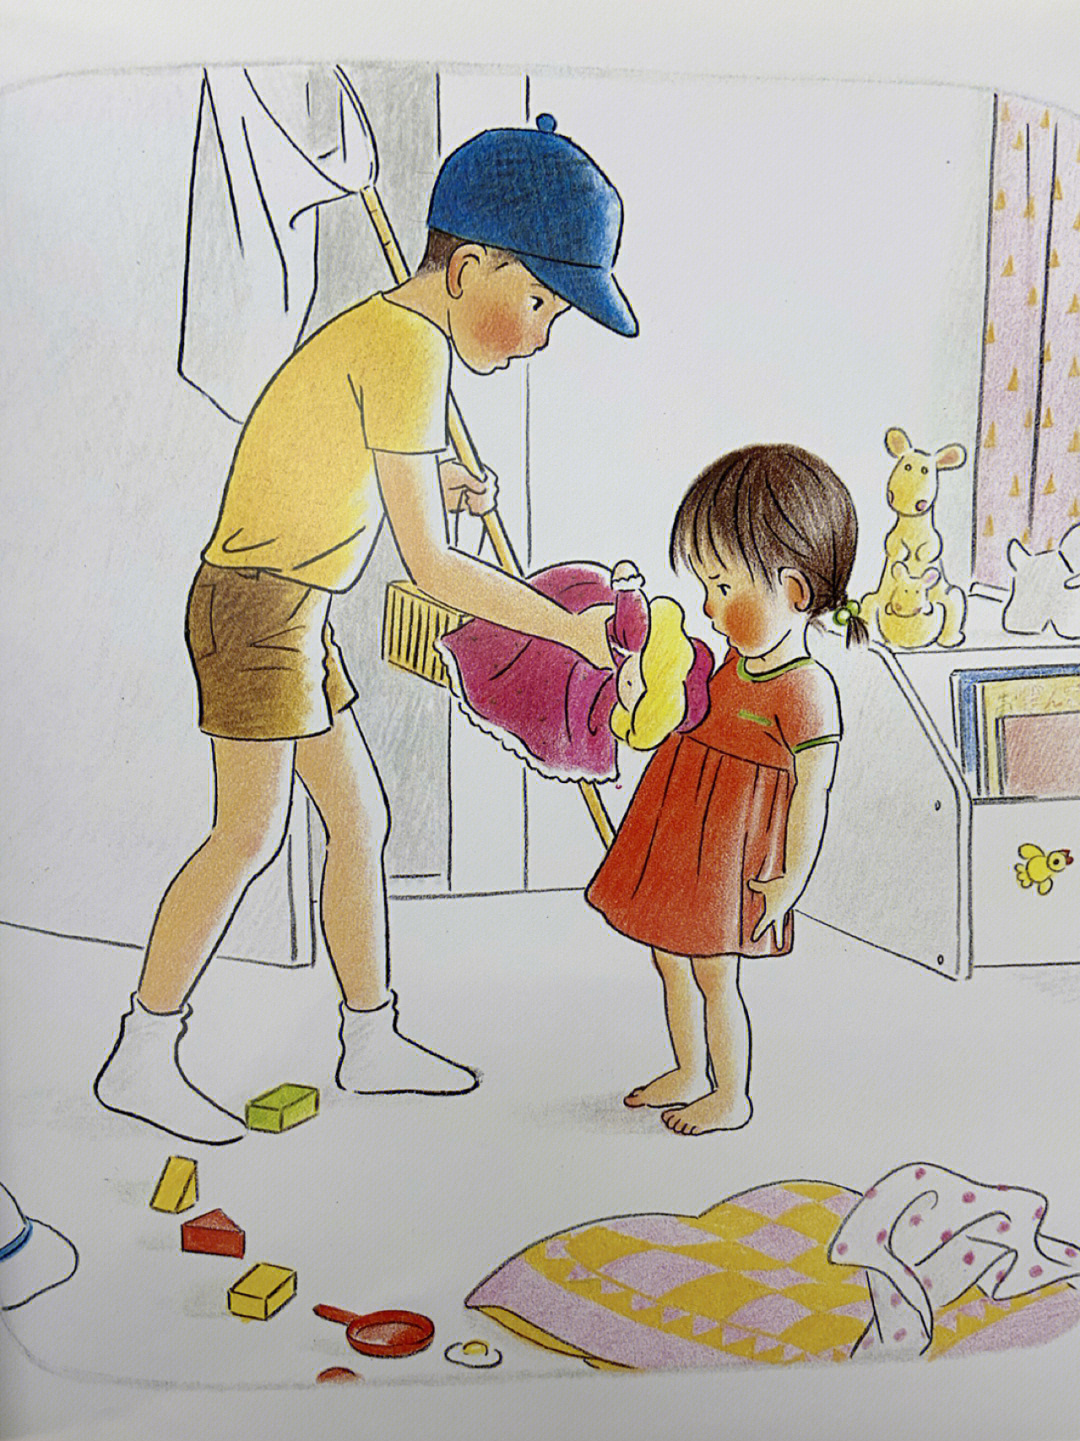 林明子画出孩子体态神情的绘本大师